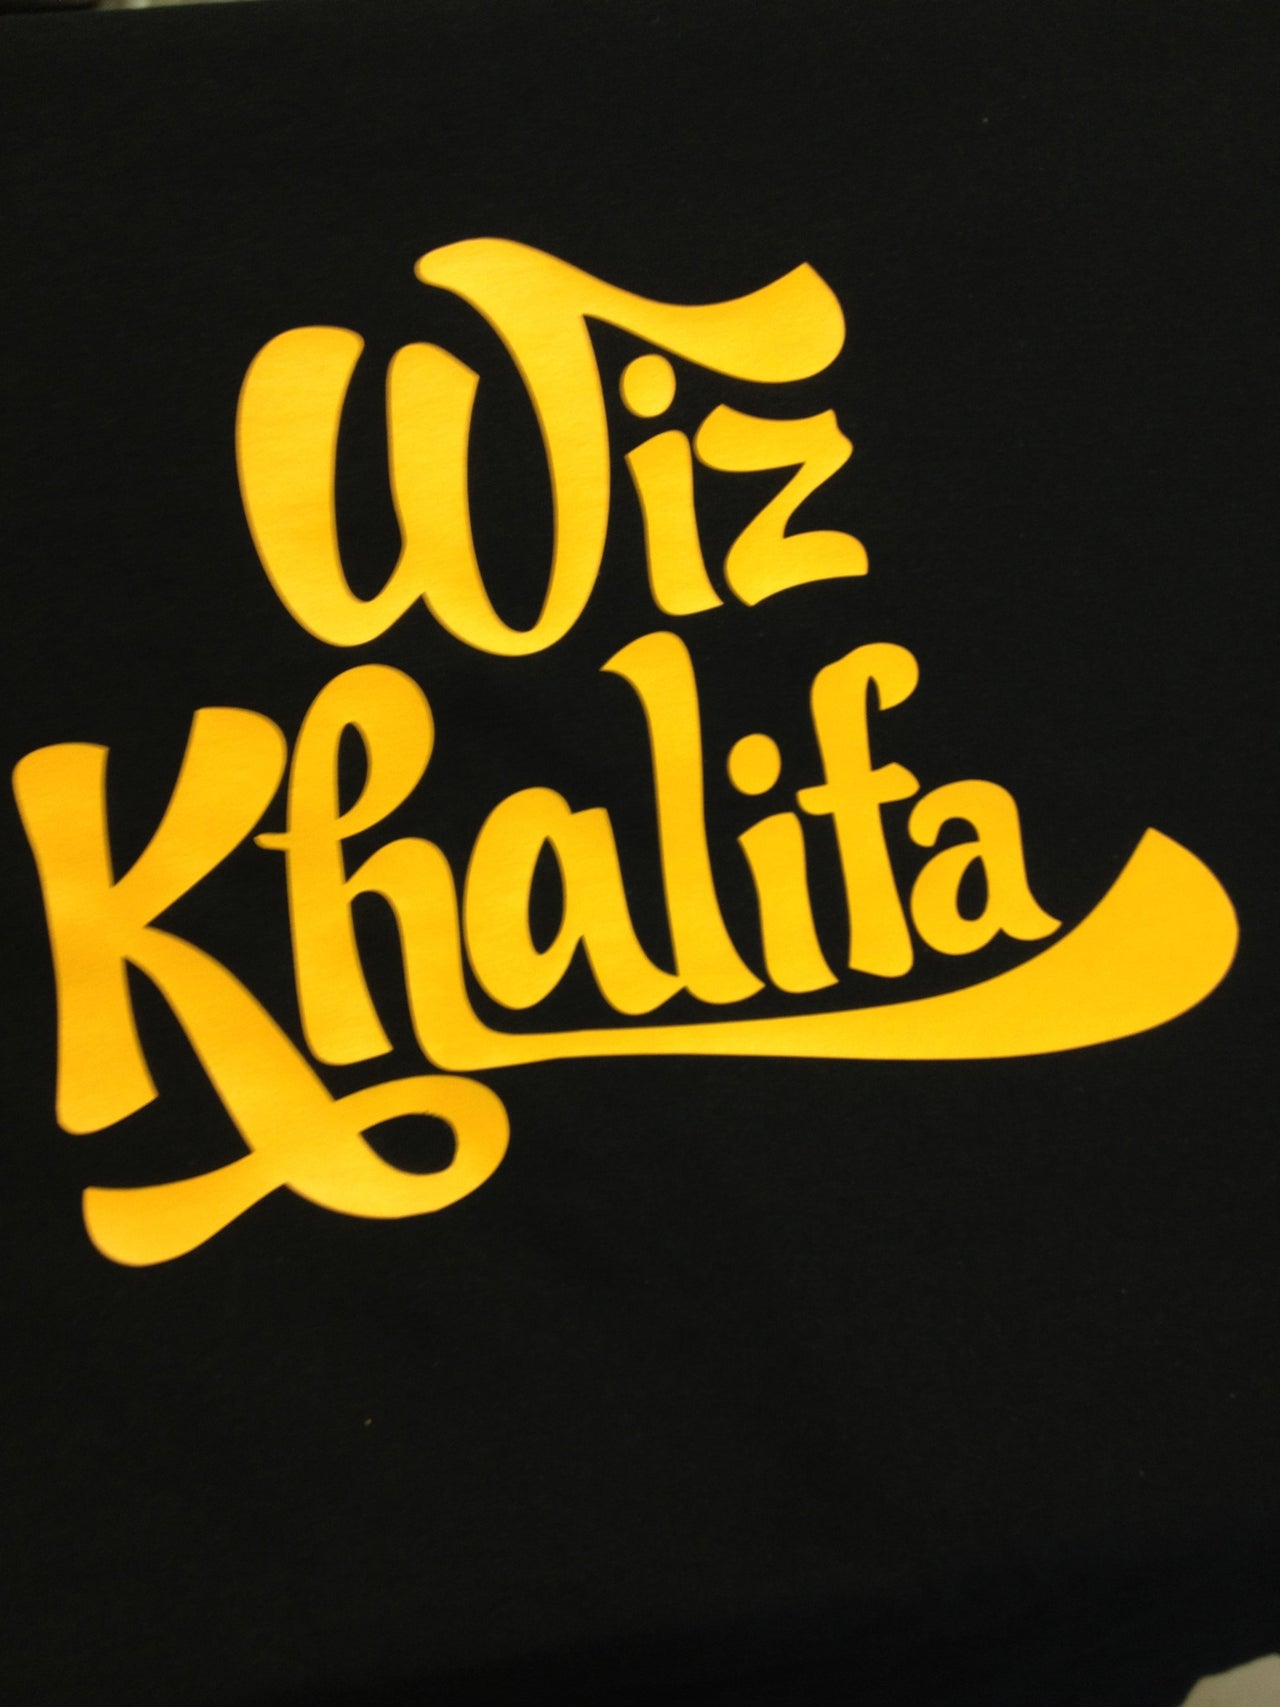 "Wiz Khalifa" Tshirt - TshirtNow.net - 6